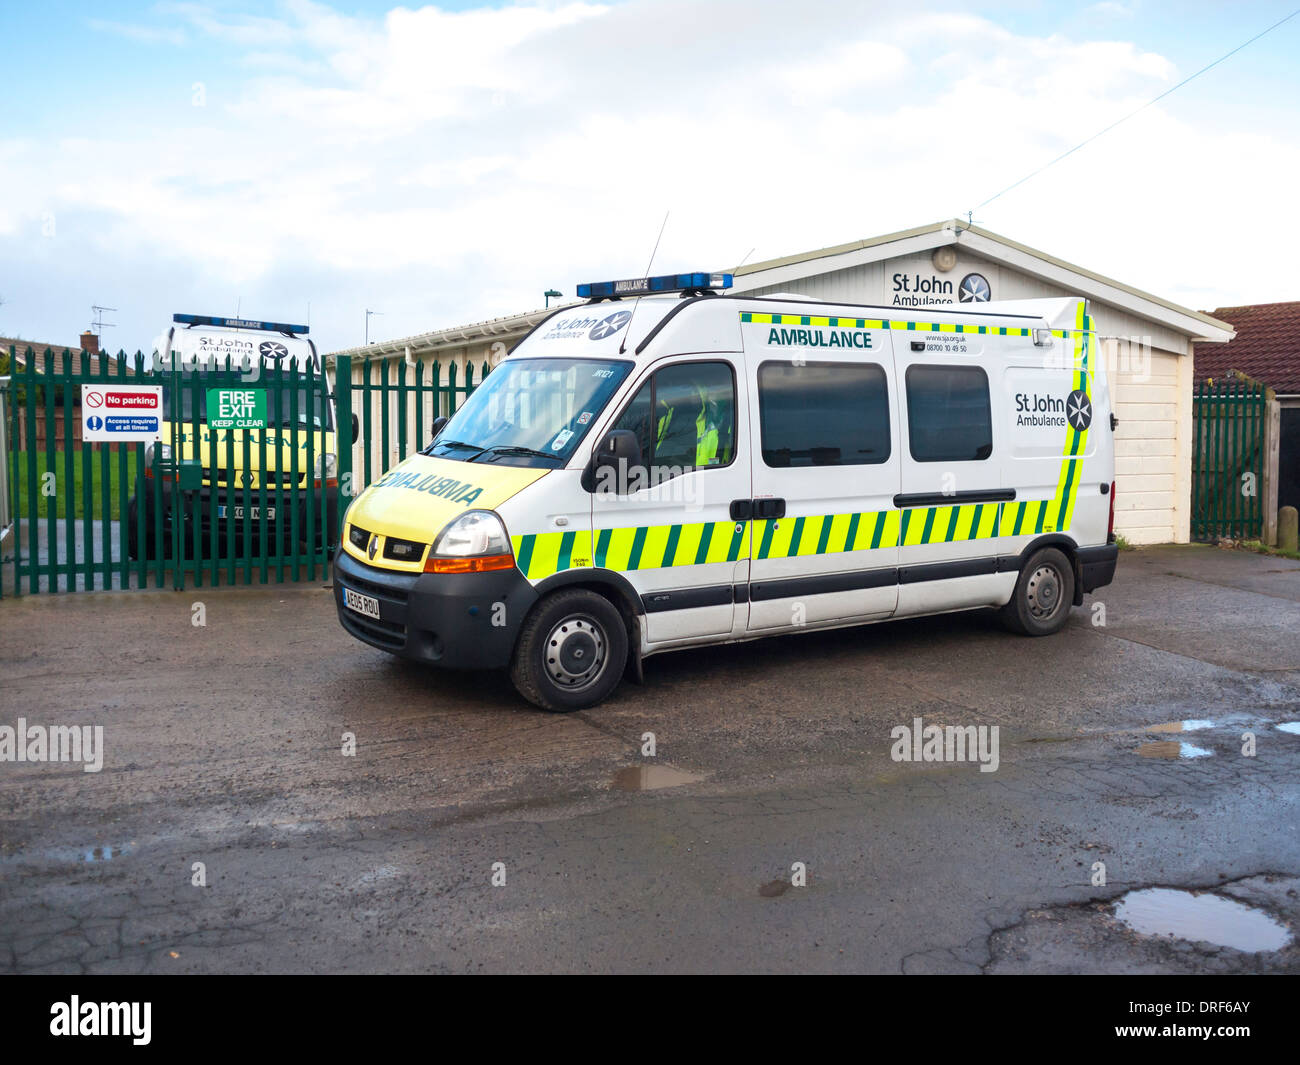 Una ambulancia de San Juan fuera de su cabaña utilizada para reuniones y el equipo de almacenamiento para los líderes del Reino Unido caridad de primeros auxilios Foto de stock